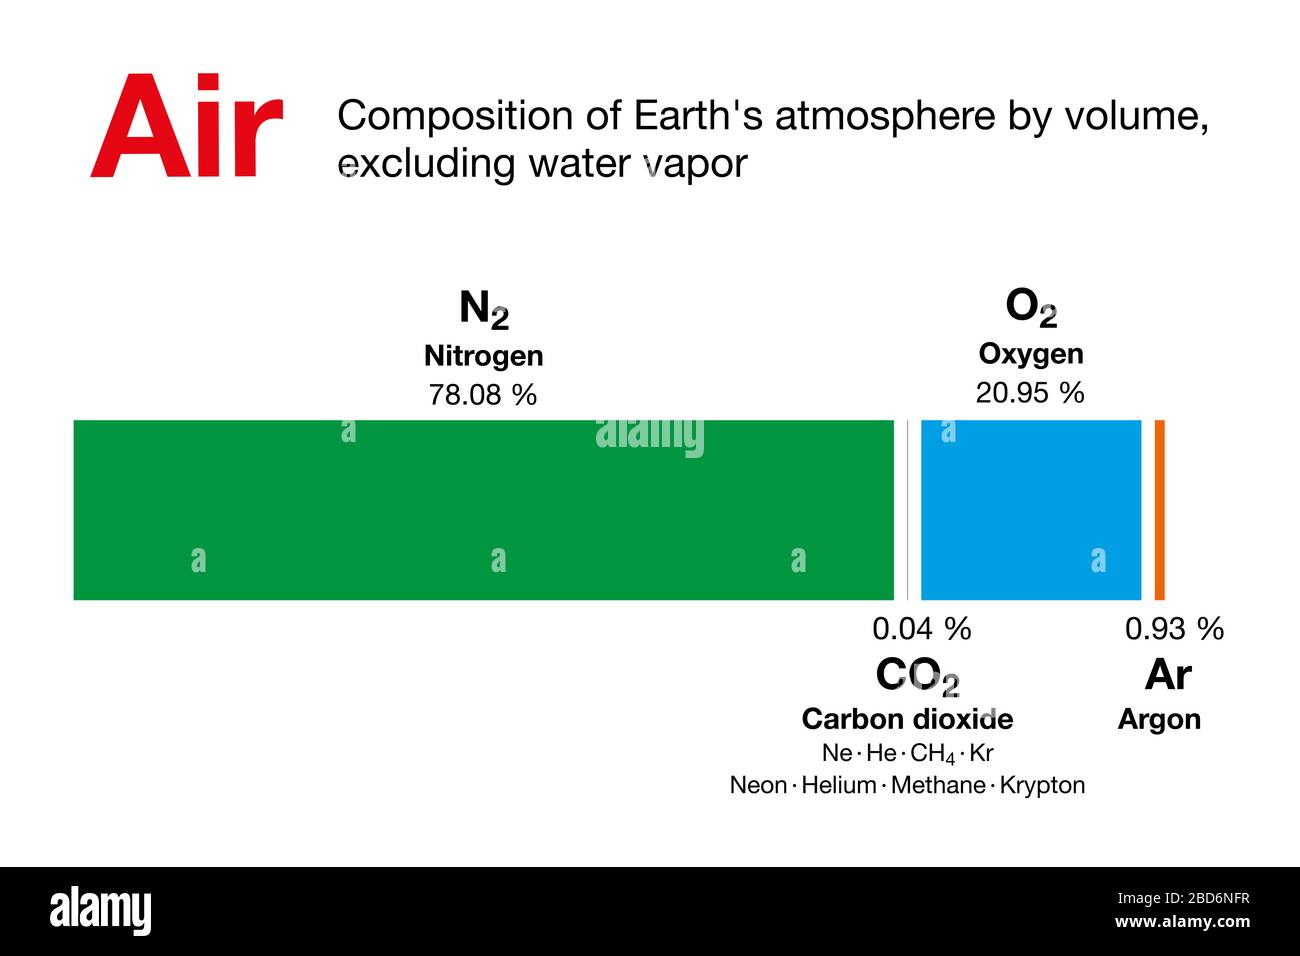 Luft, Zusammensetzung der Erdatmosphäre nach Volumen, ohne Wasserdampf.  Trockene Luft enthält Stickstoff, Sauerstoff, Argon, Kohlendioxid und  andere Gase Stockfotografie - Alamy